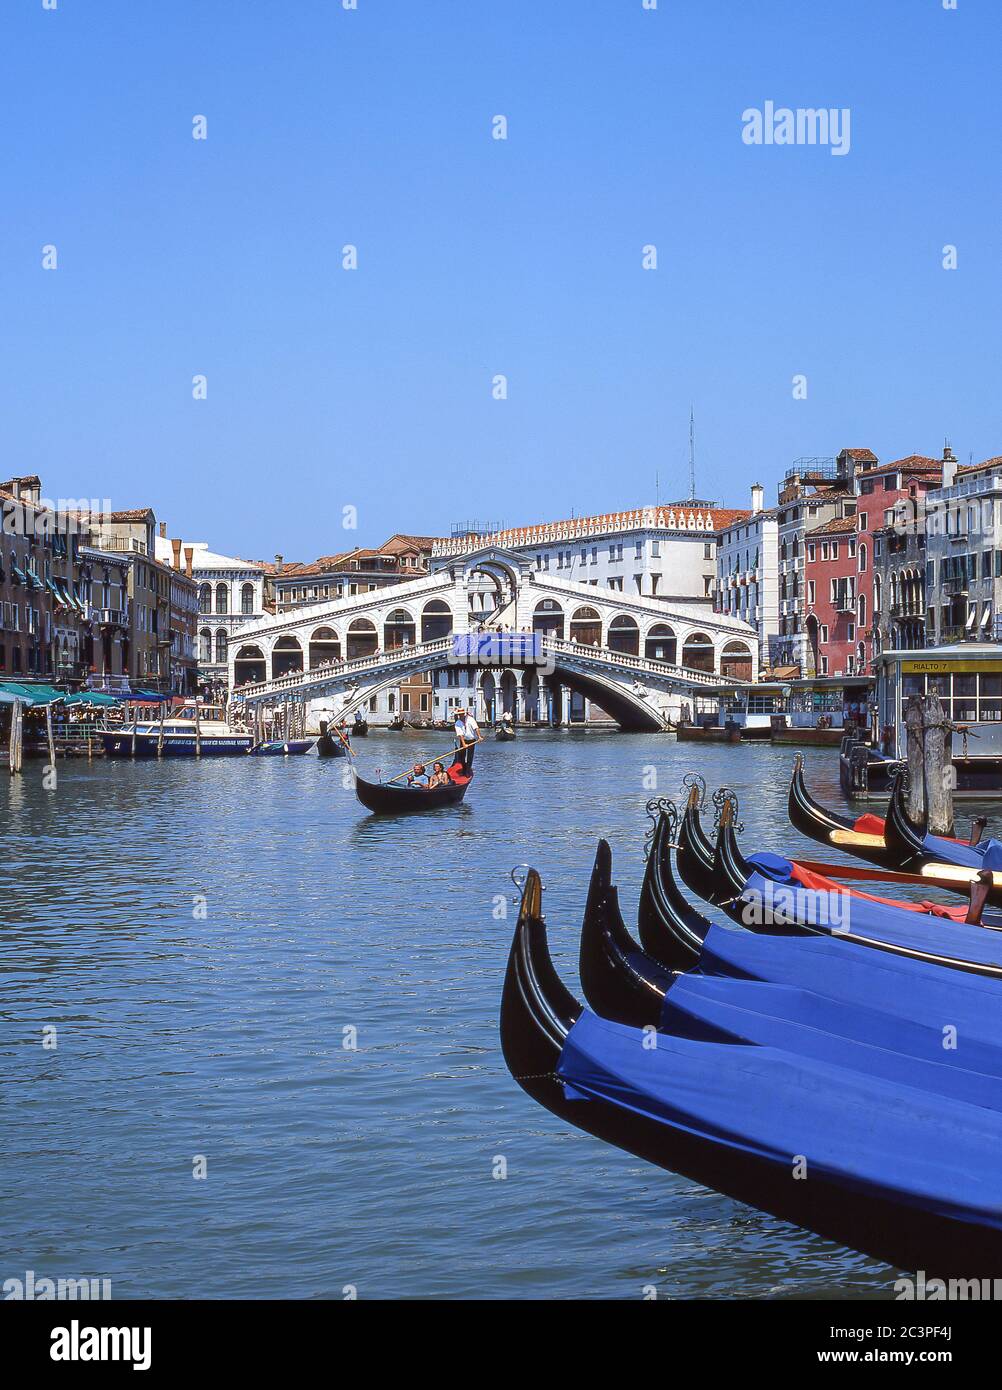 Gondola on Grand Canal, Venice (Venezia), Veneto Region, Italy Stock Photo